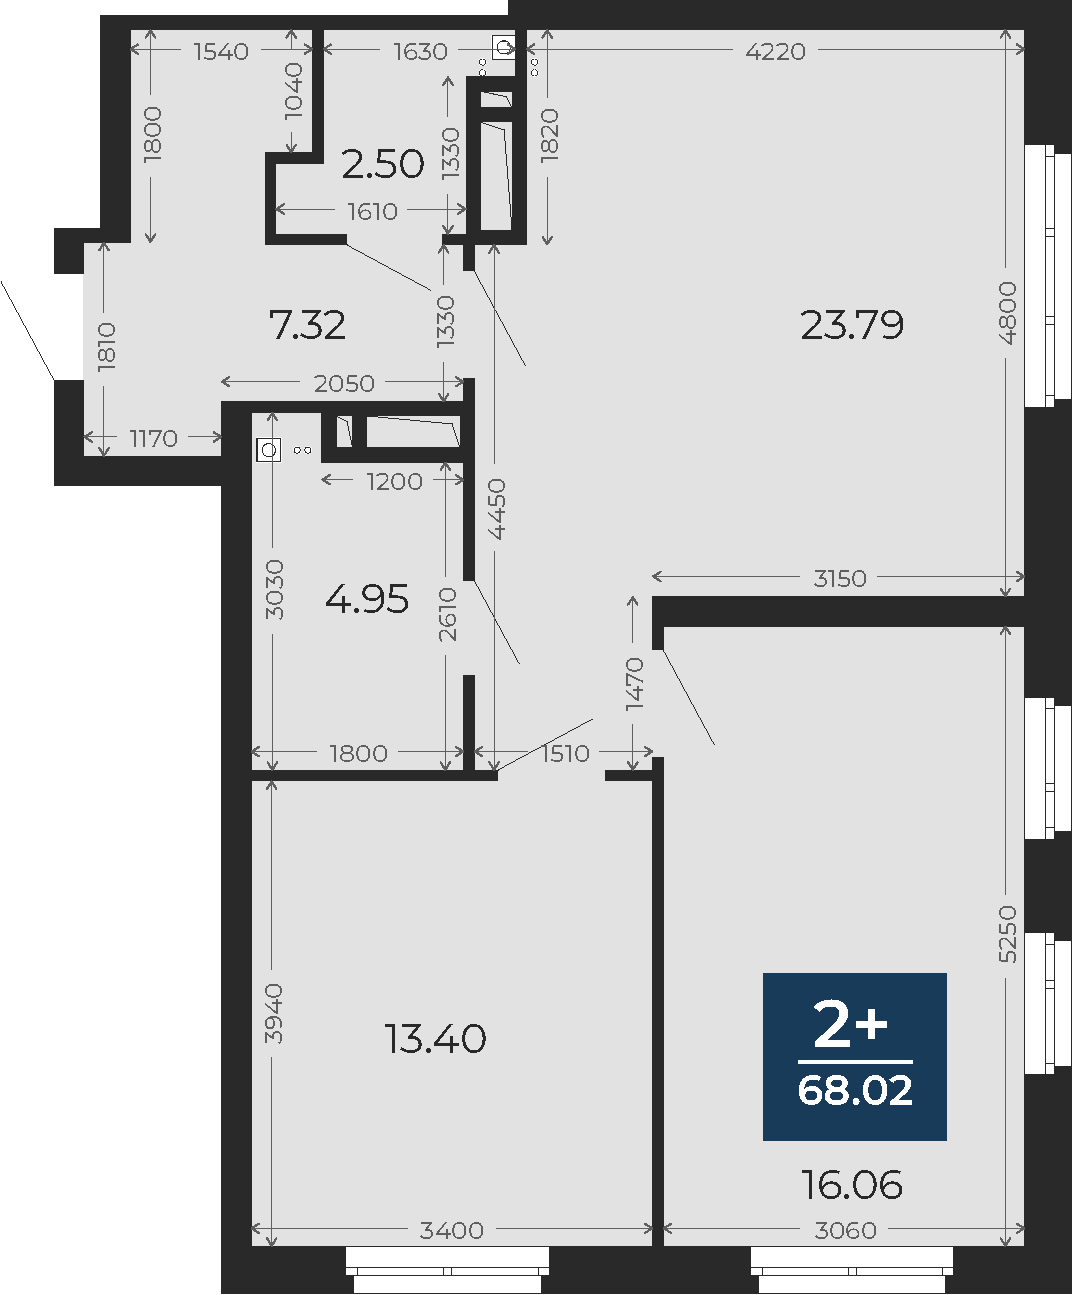 Квартира № 302, 2-комнатная, 68.02 кв. м, 23 этаж